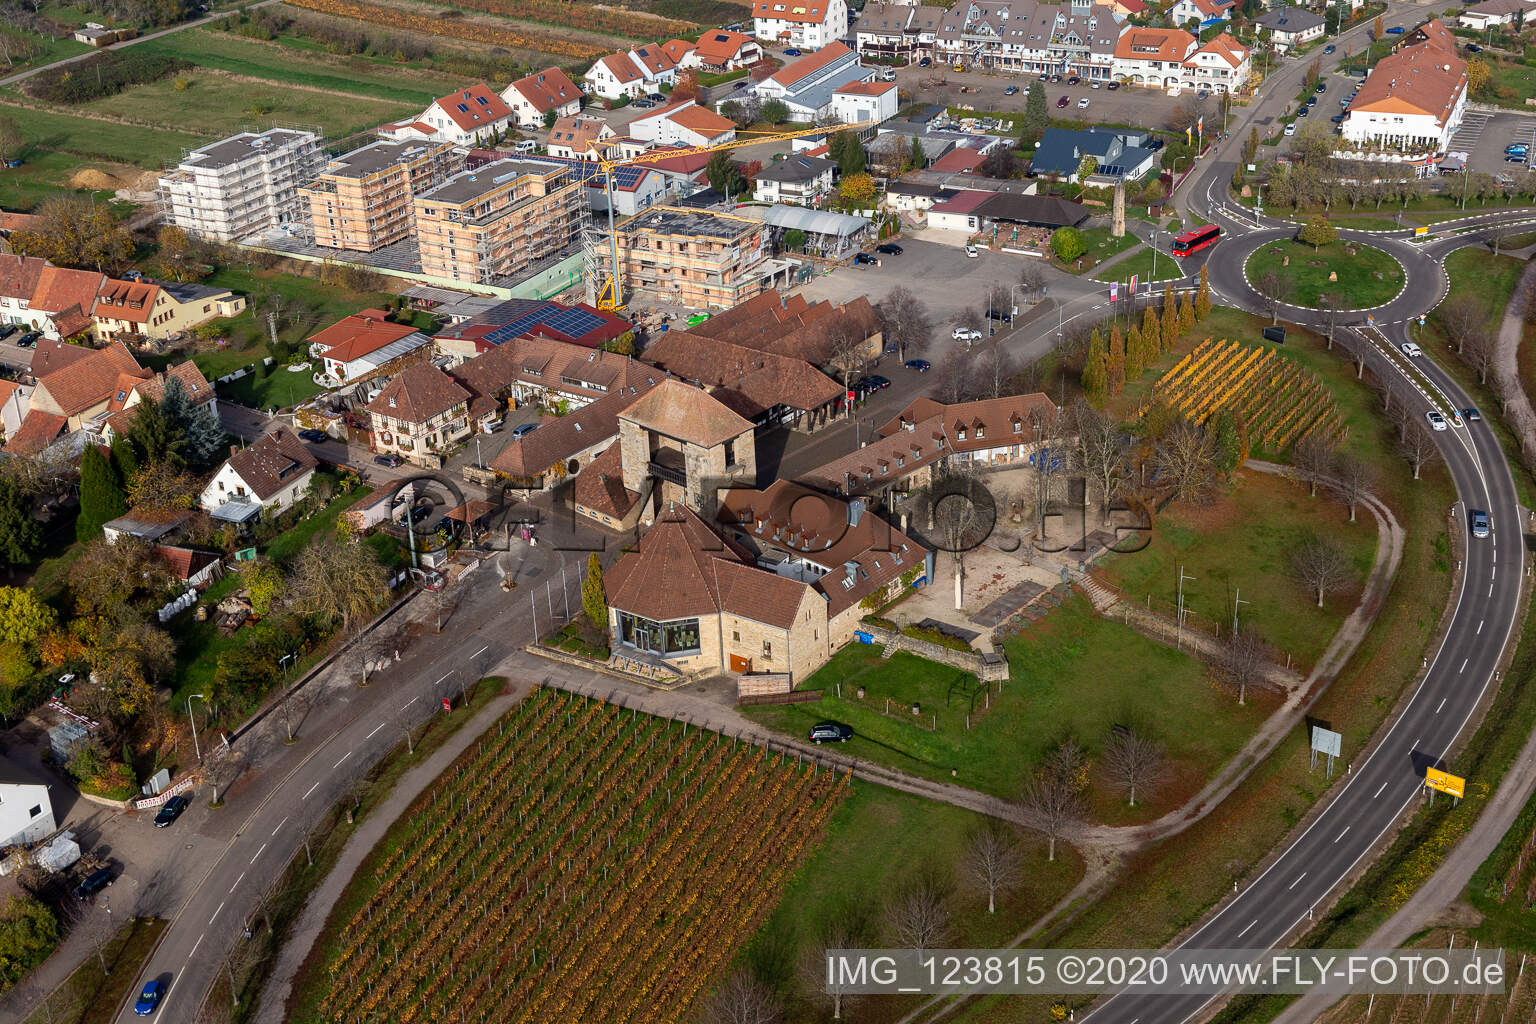 Aerial photograpy of German wine gate in the district Schweigen in Schweigen-Rechtenbach in the state Rhineland-Palatinate, Germany